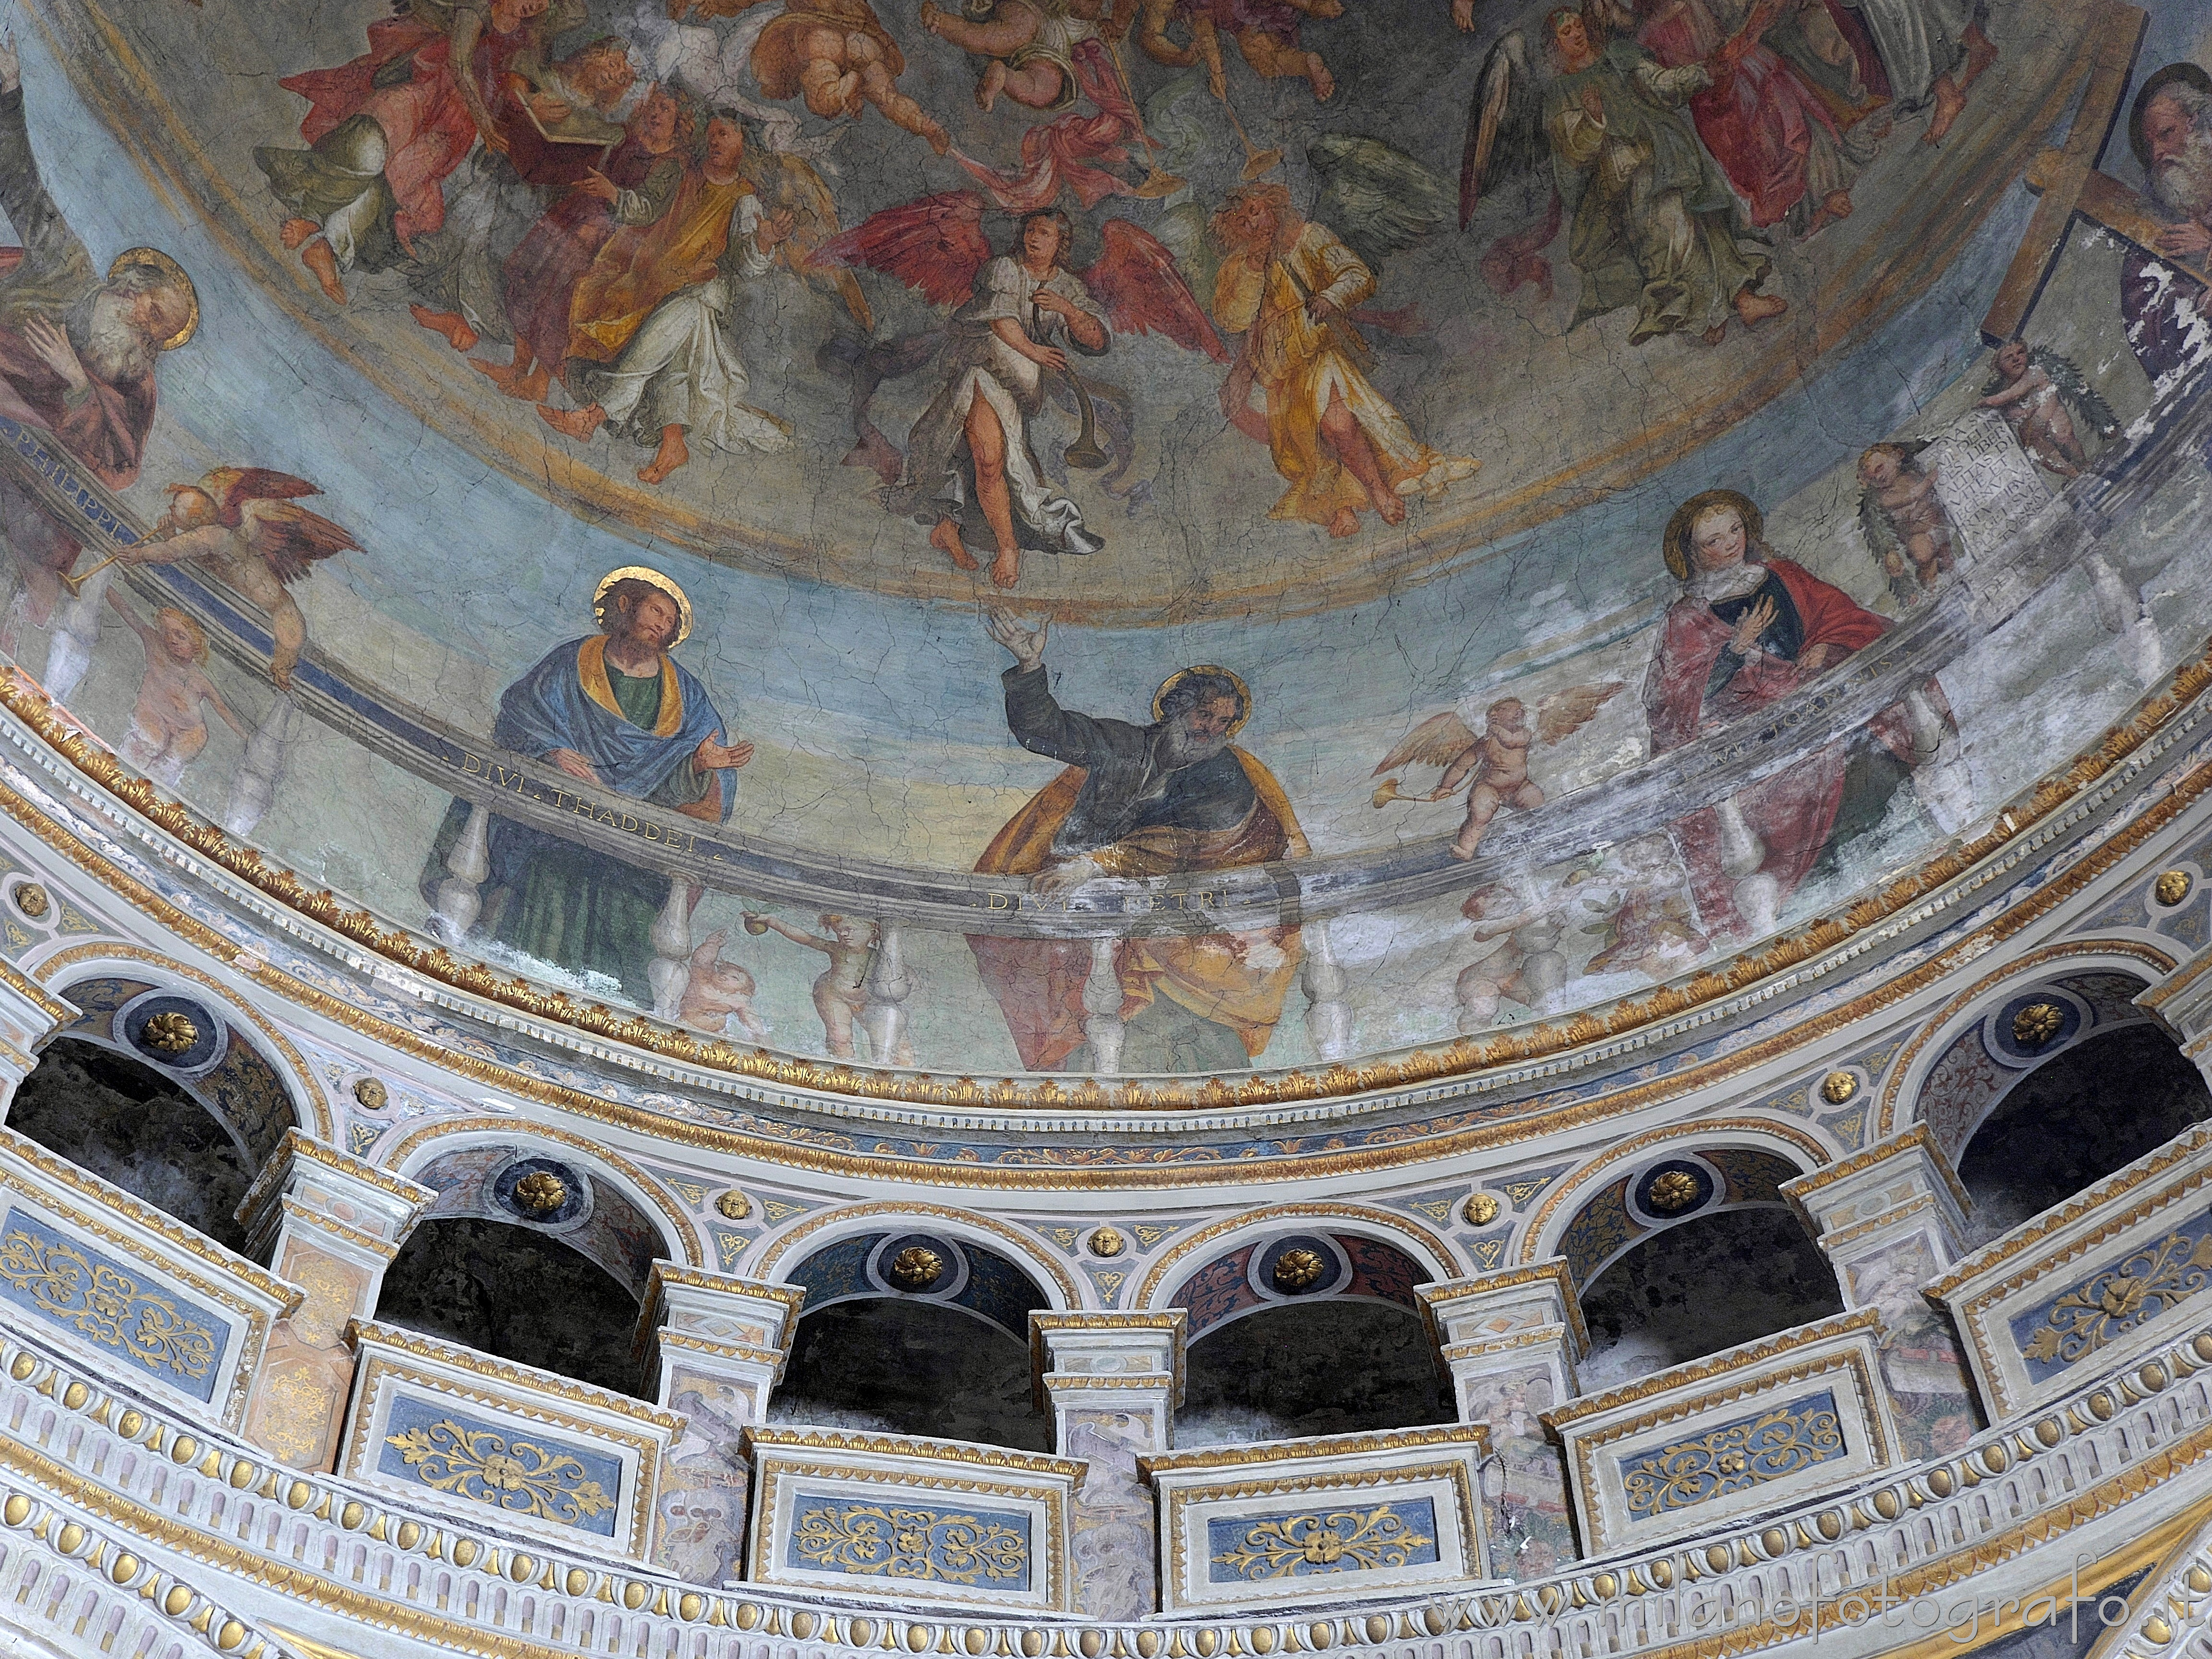 Caravaggio (Bergamo): Dettaglio degli affreschi all'interno della cupola della Cappella del Santissimo Sacramento nella Chiesa dei Santi Fermo e Rustico - Caravaggio (Bergamo)